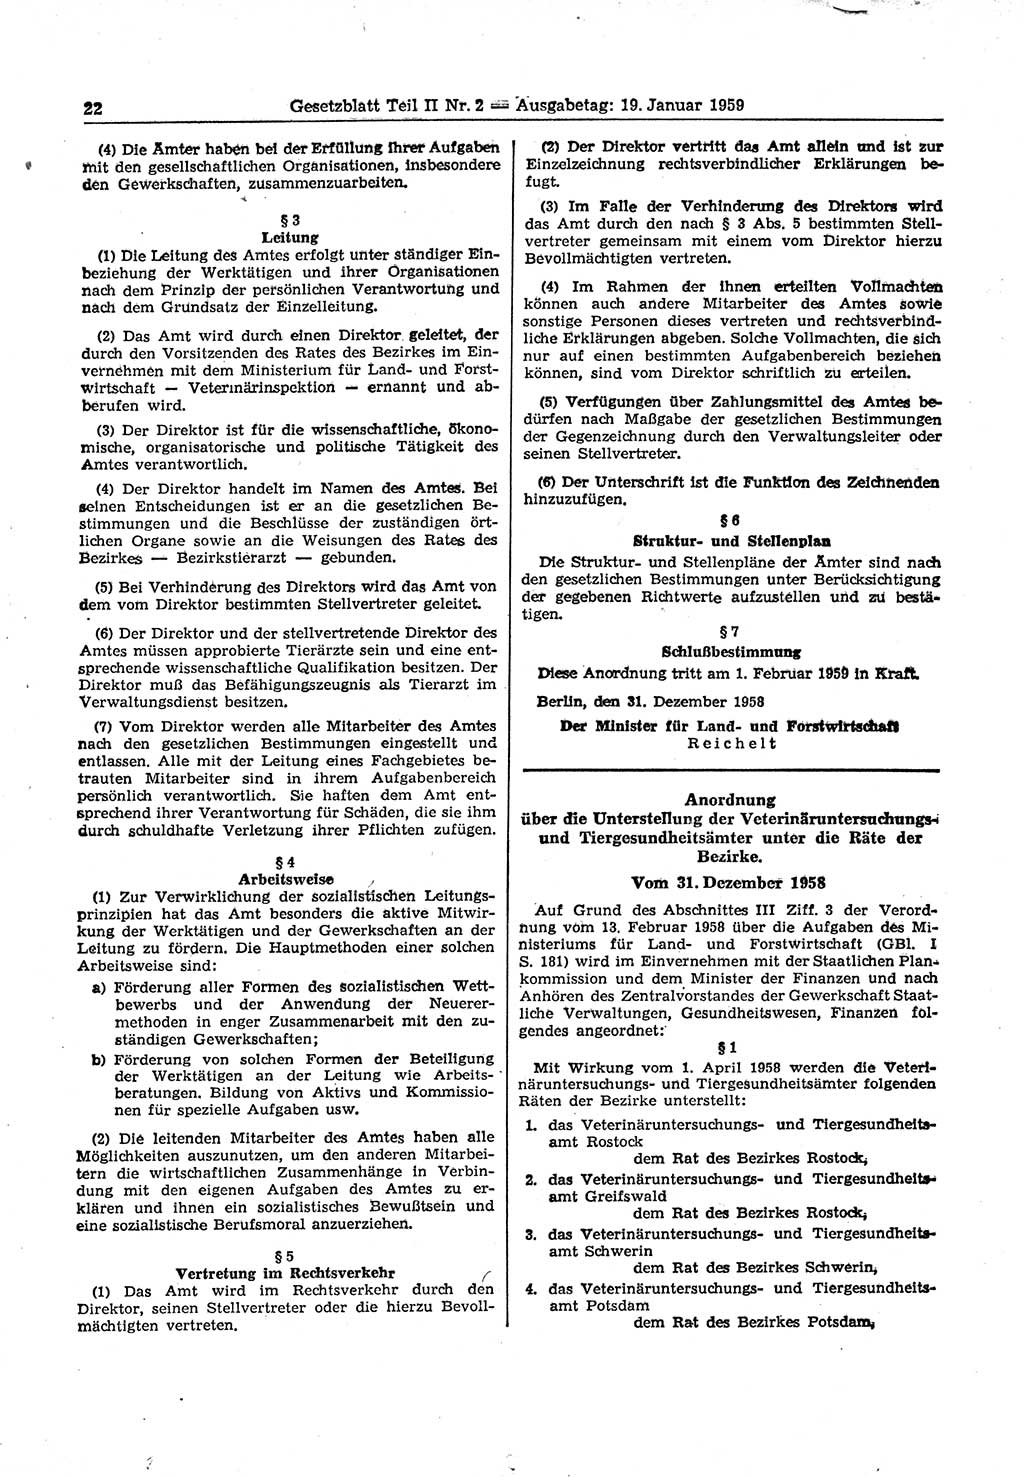 Gesetzblatt (GBl.) der Deutschen Demokratischen Republik (DDR) Teil ⅠⅠ 1959, Seite 22 (GBl. DDR ⅠⅠ 1959, S. 22)